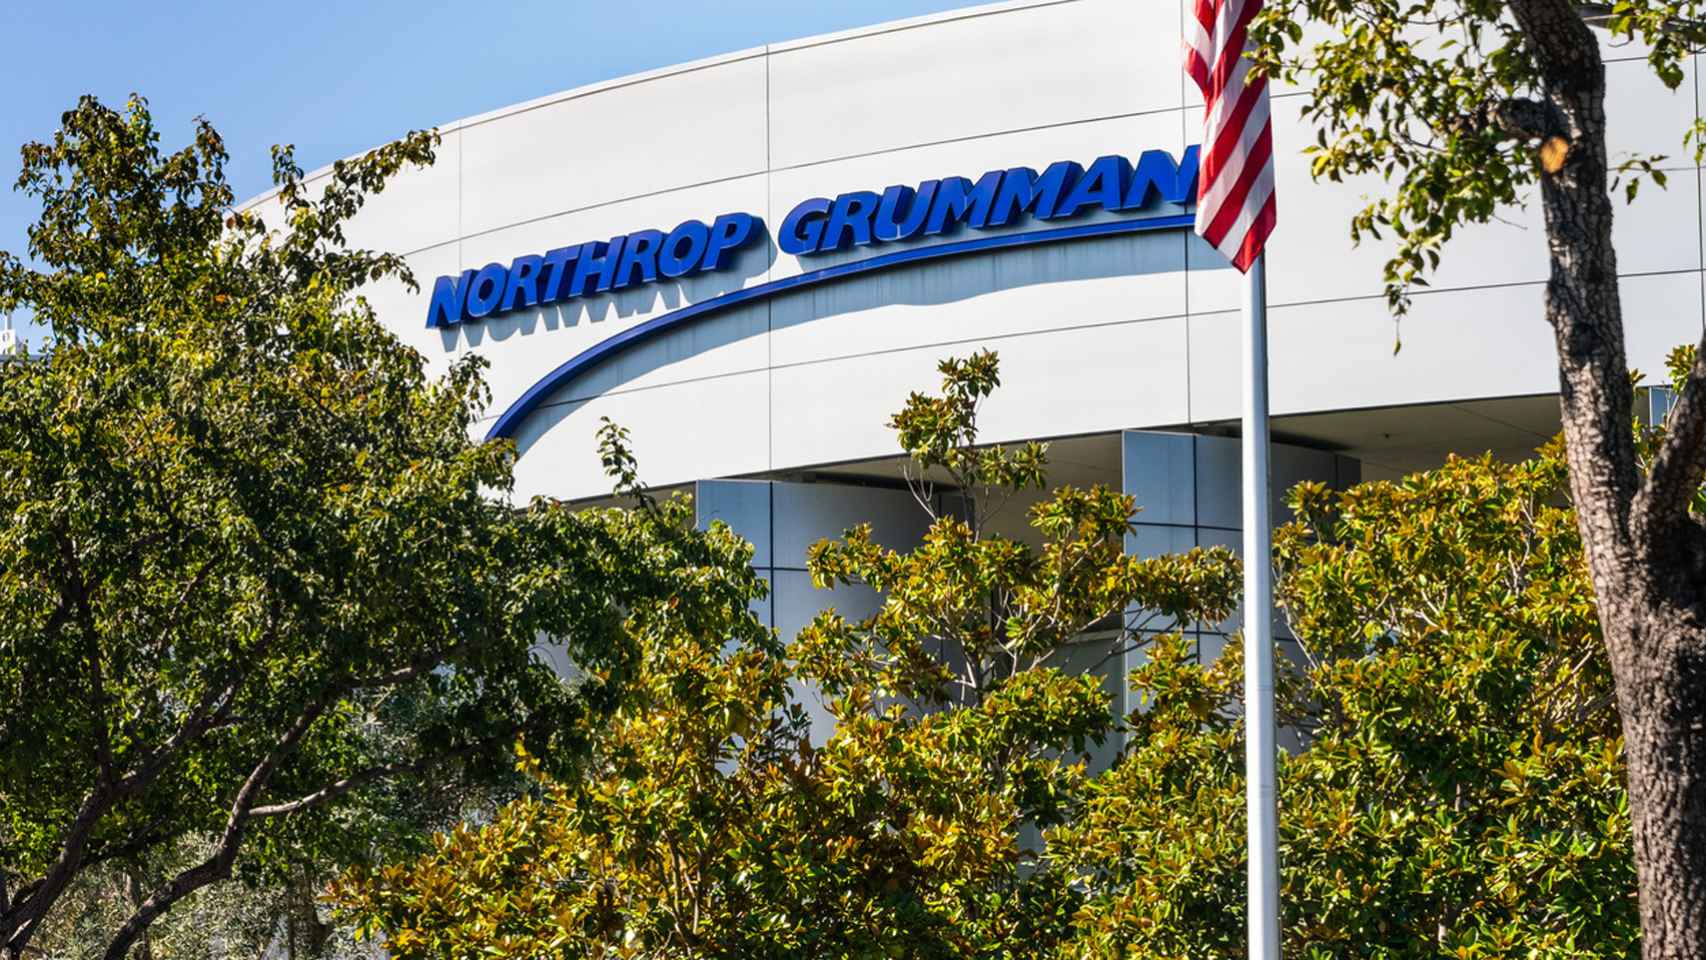 Oficinas de Northrop Grumman en Silicon Valley.